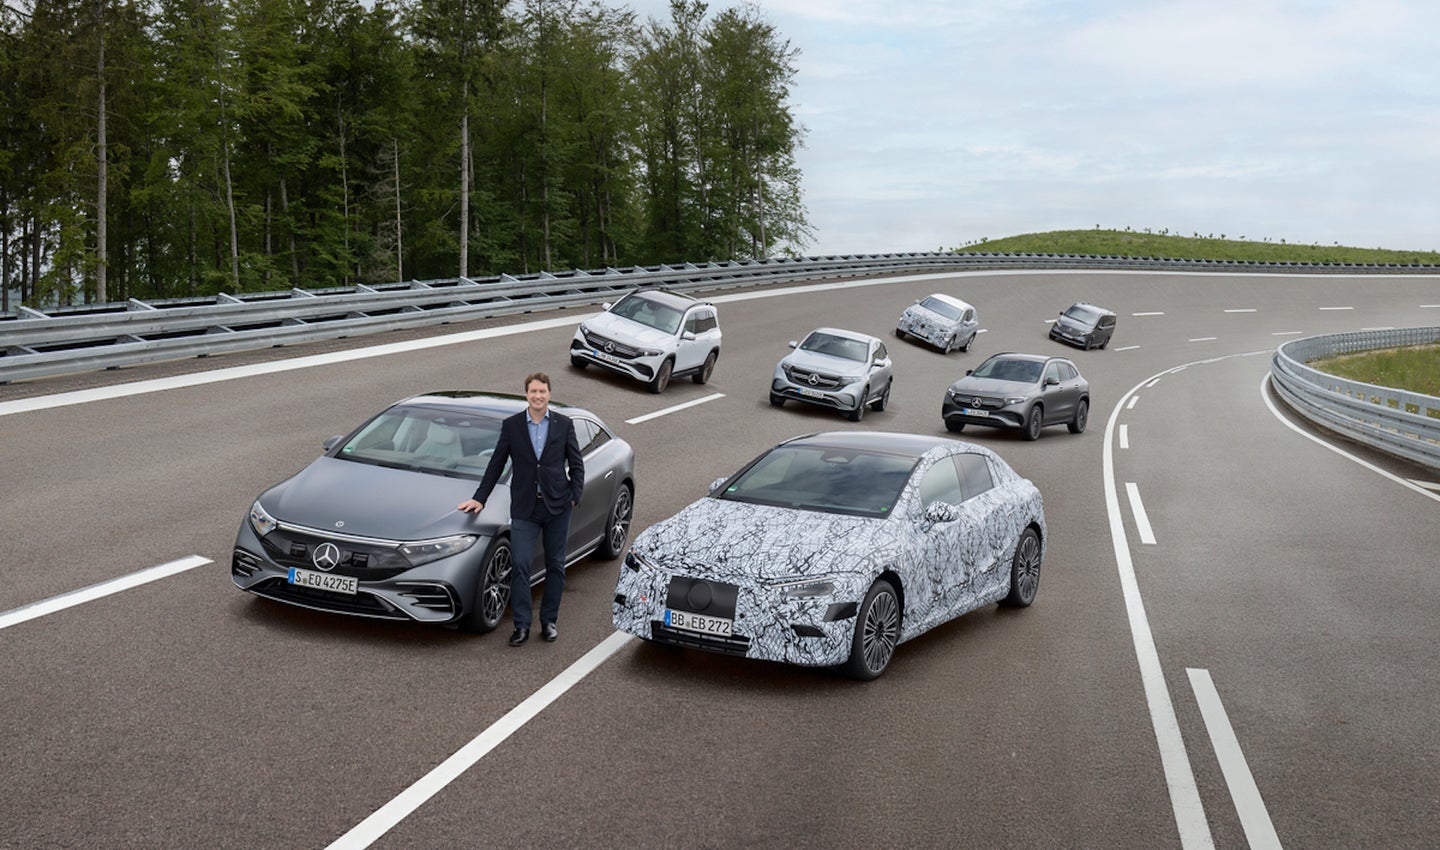 Mercedes-EQ Family Immendingen 2021